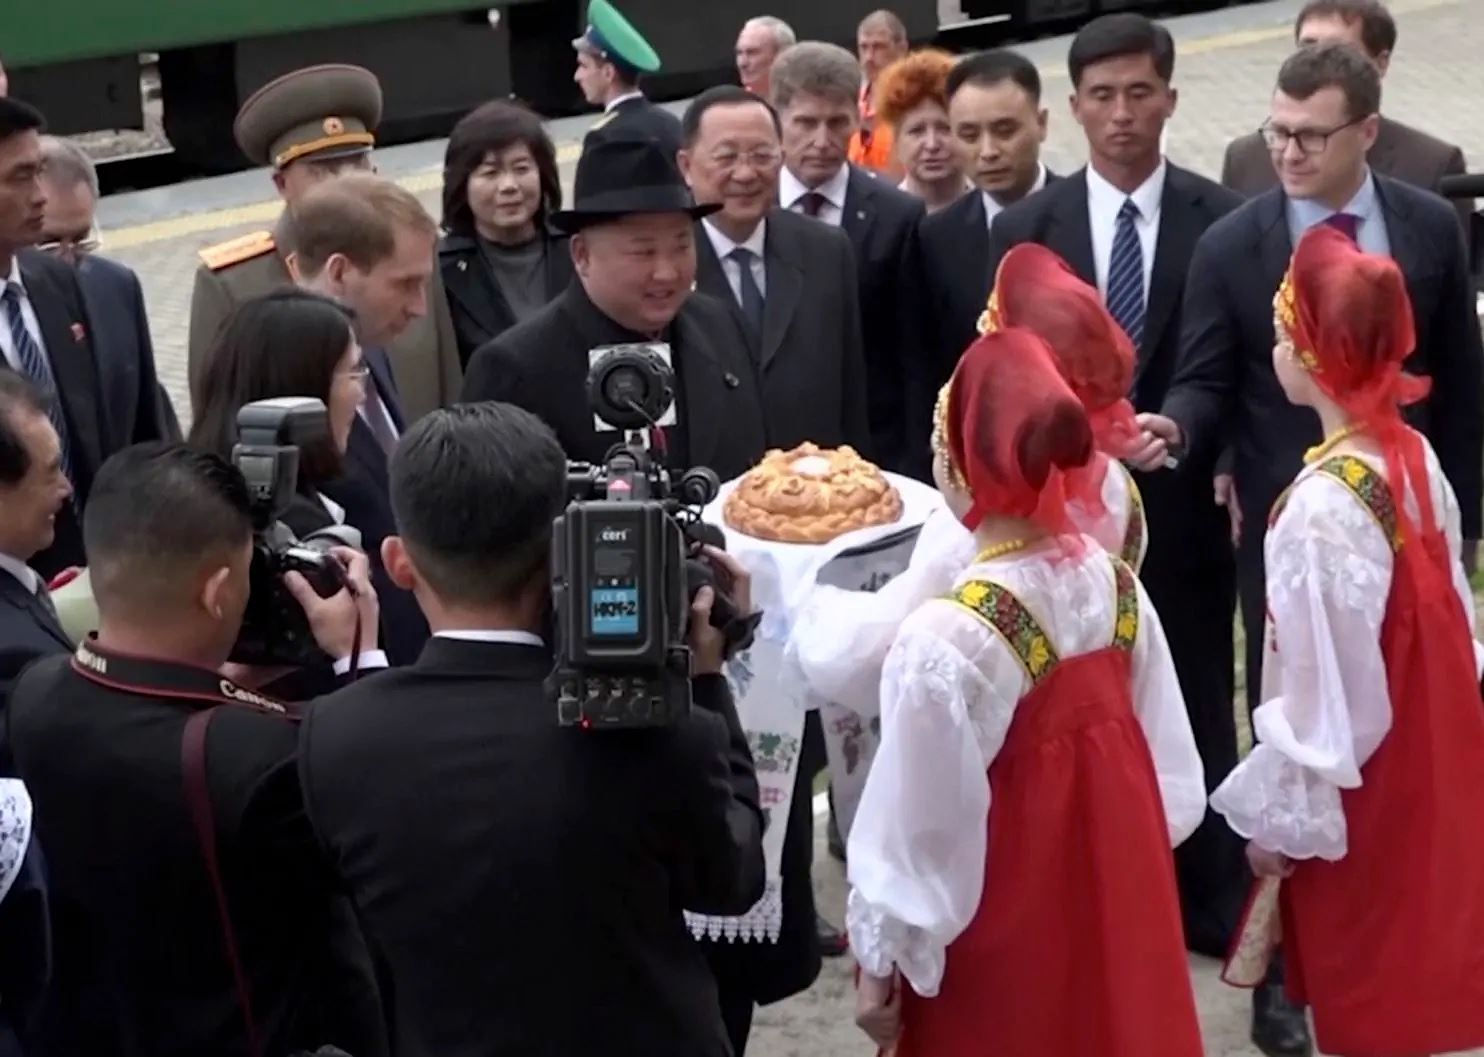 Tại Nga, ông Kim Jong Un đã được đón tiếp nồng nhiệt và được mời thưởng thức bánh mì và muối, một món ăn truyền thống người dân Nga thường dùng để chiêu đãi khách quý.